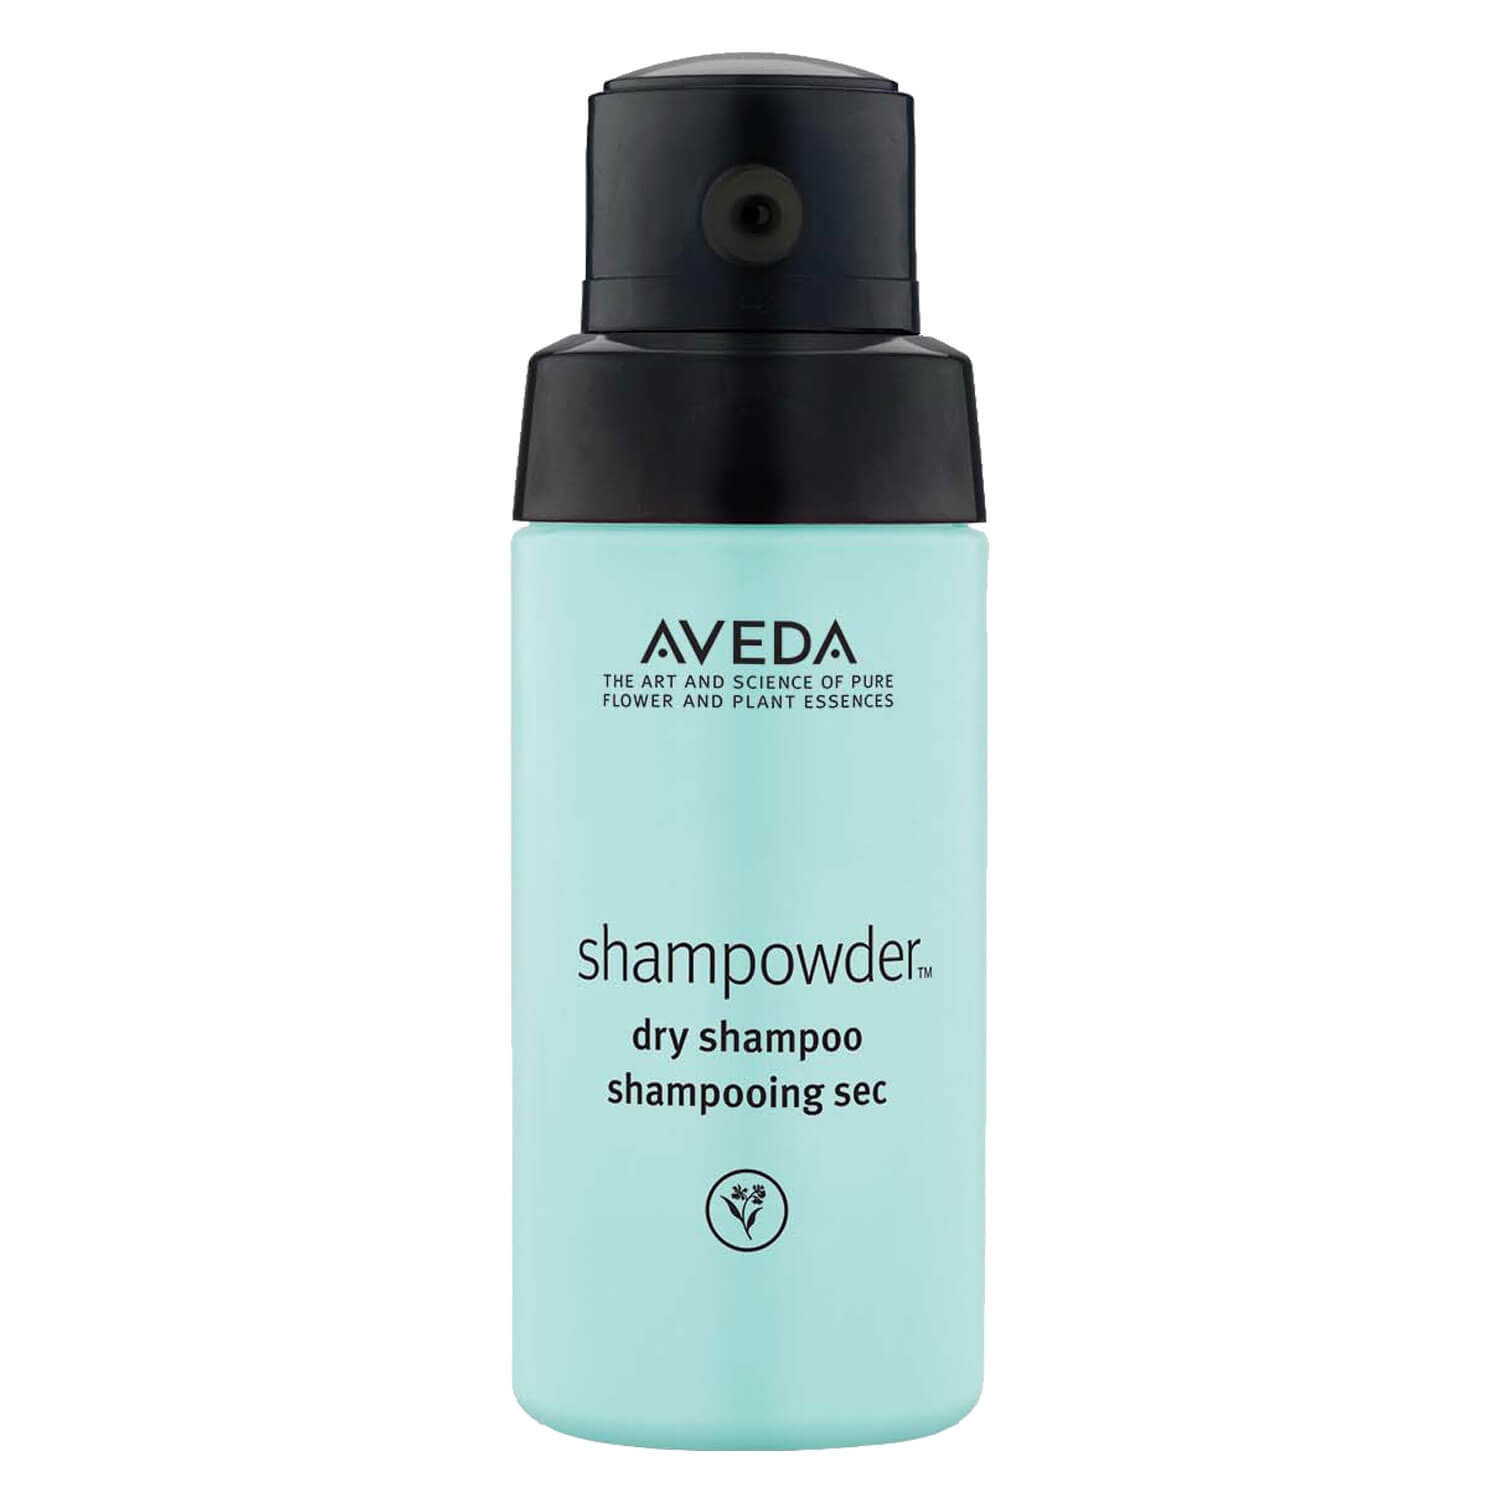 Produktbild von shampure - shampowder dry shampoo